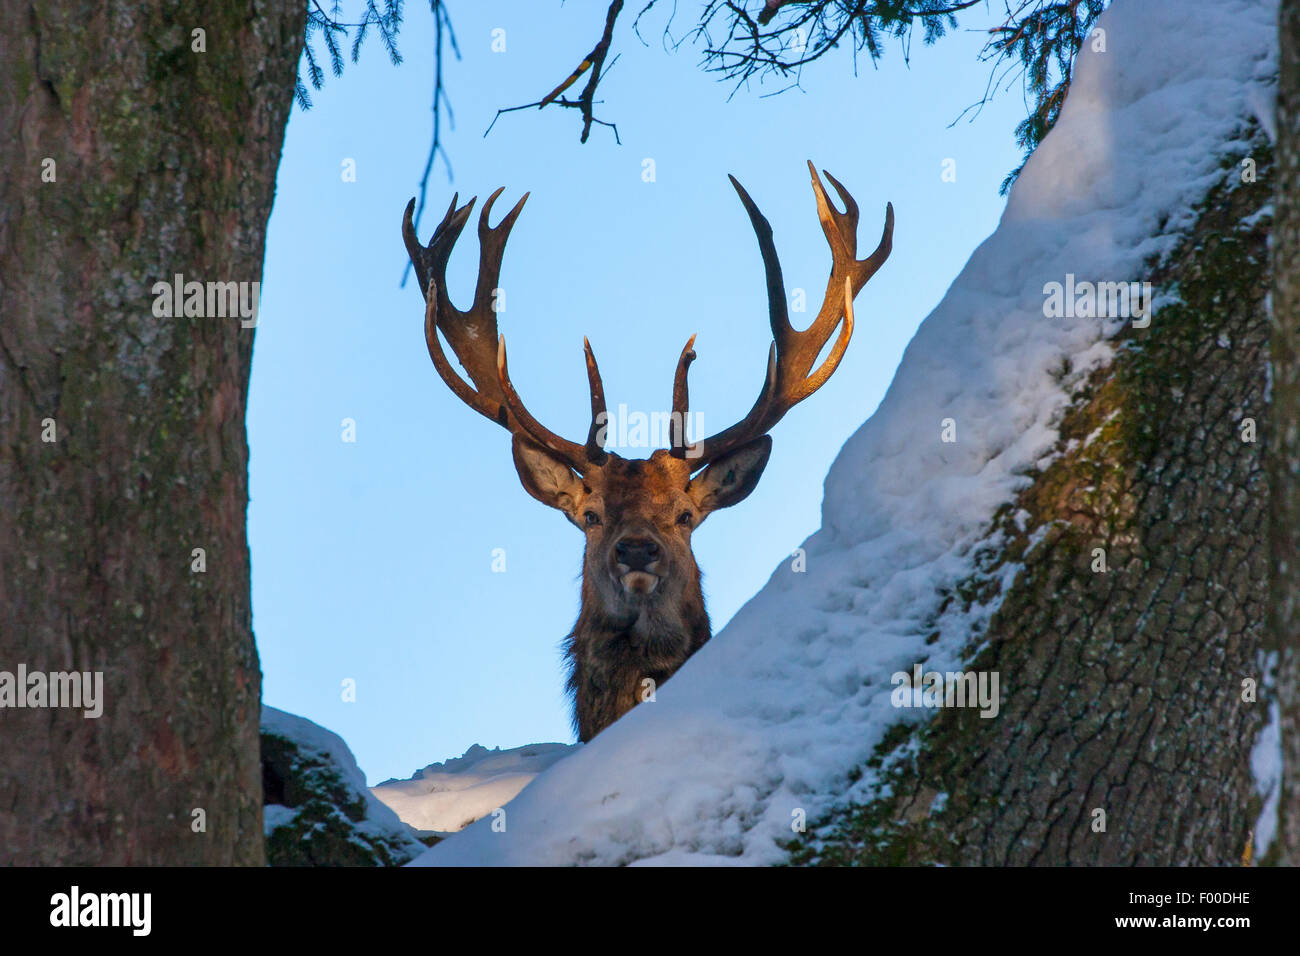 Red Deer (Cervus elaphus), stag ressemble au travers d'arbres couverts de neige, Suisse, Sankt Gallen Banque D'Images